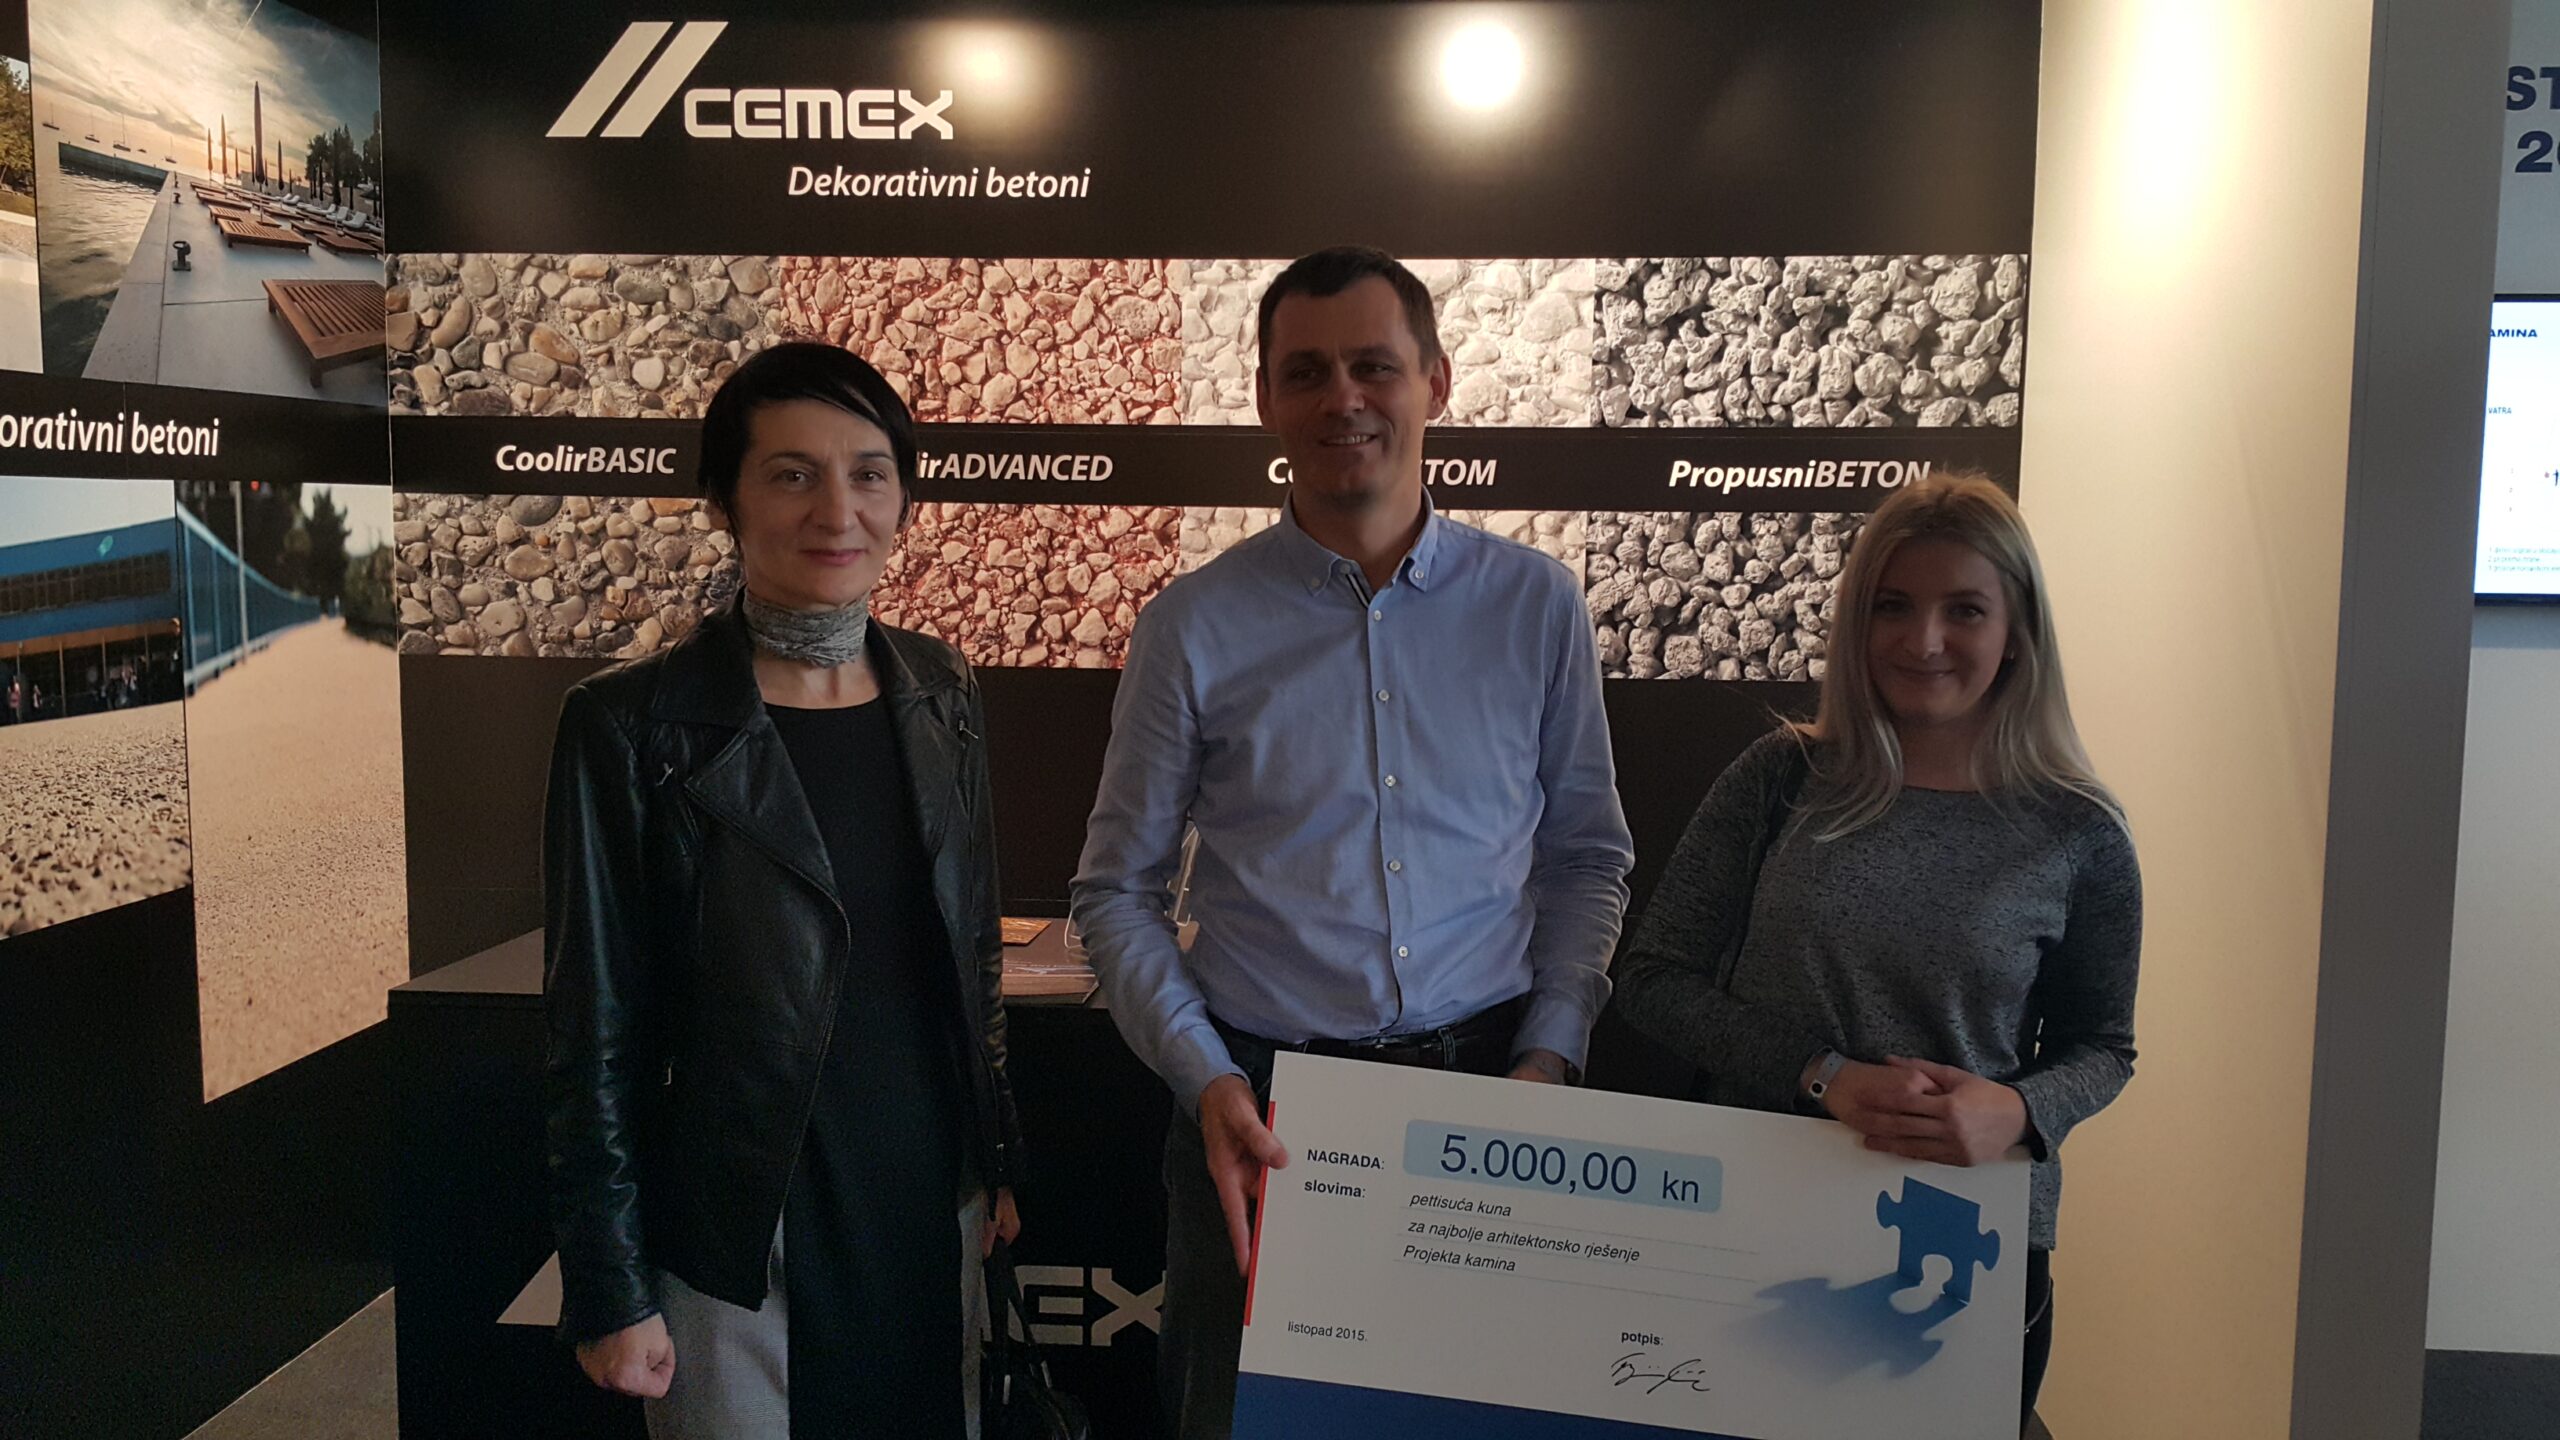 Pobjedničko rješenje natječaja CEMEX student Inovativni betonski kamin „kuća vatre“ zagrebačke studentice arhitekture, pobjedničko je rješenje natječaja CEMEX student